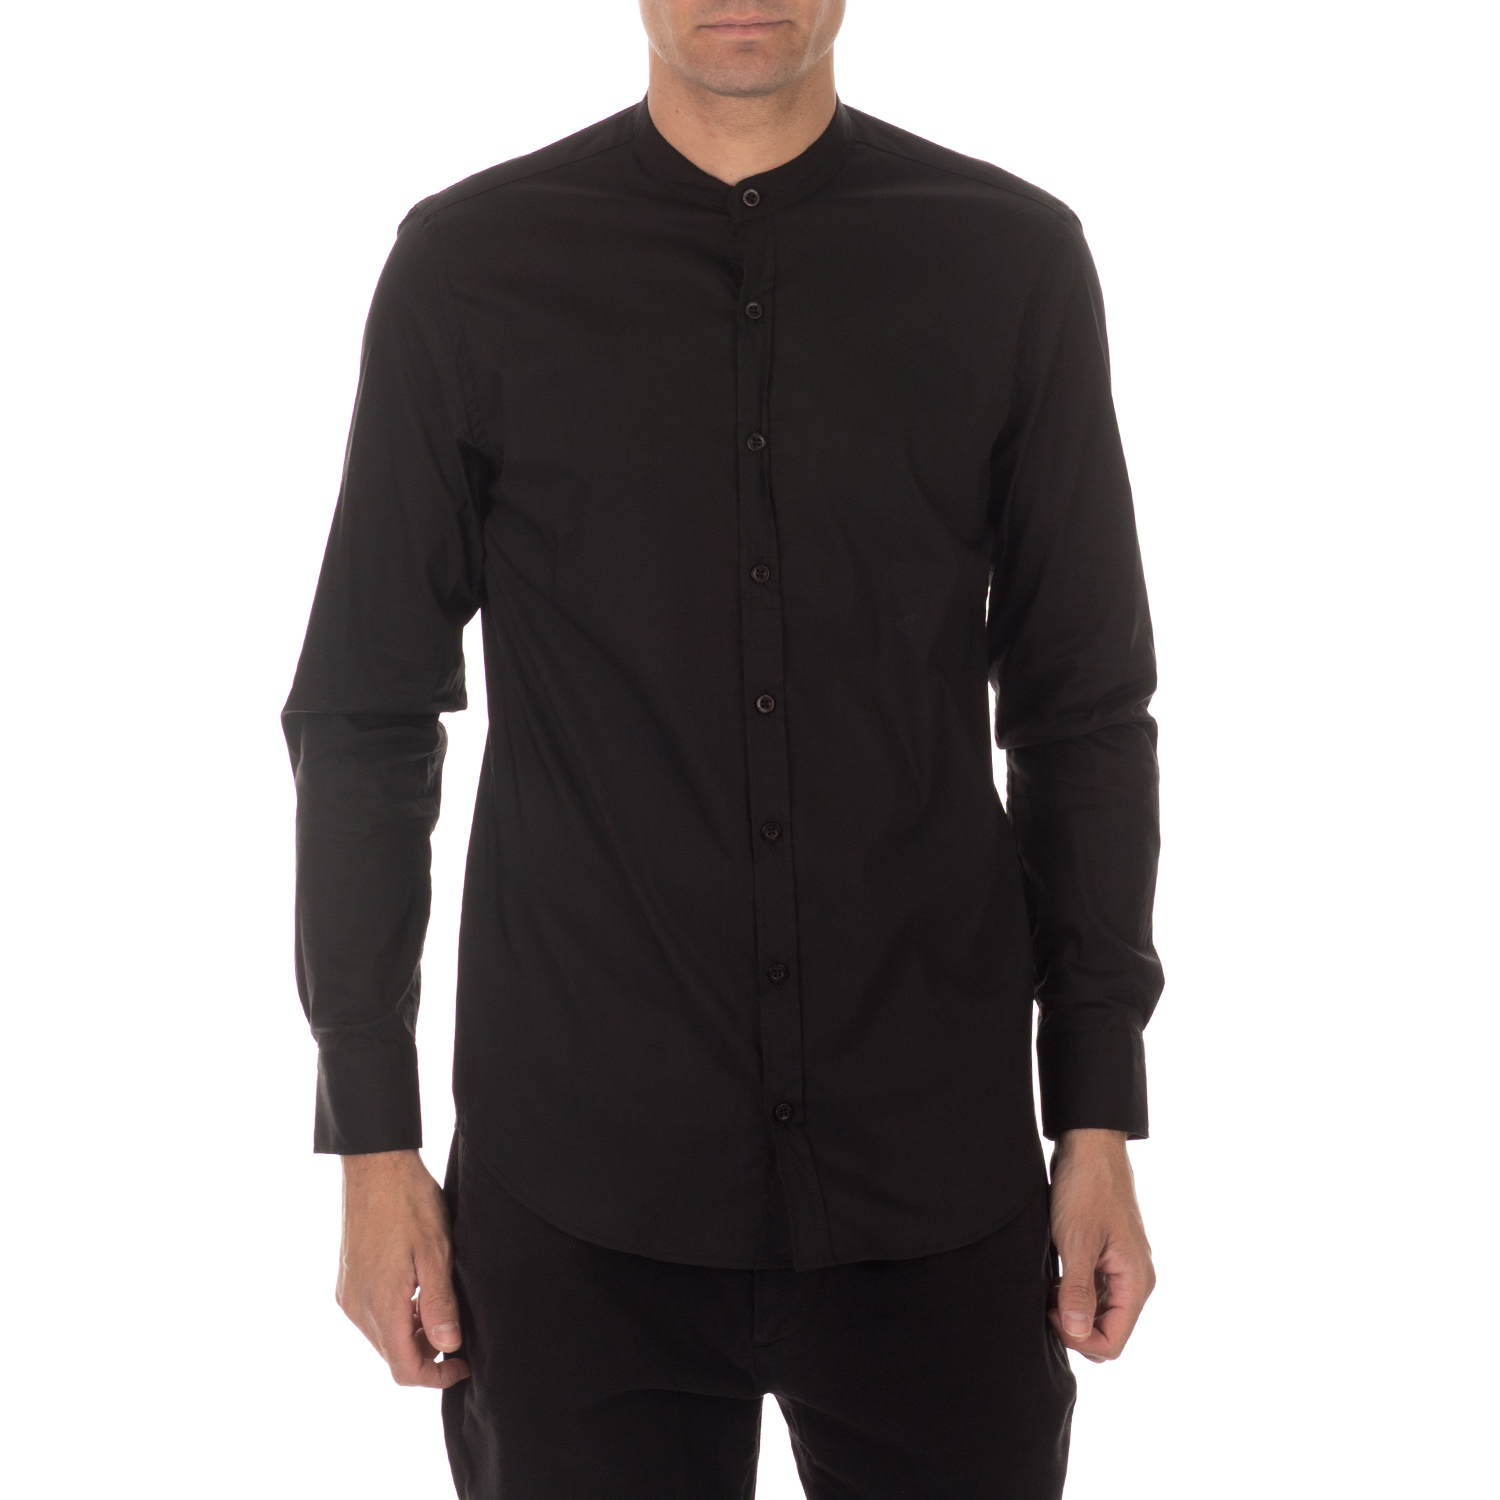 Ανδρικά/Ρούχα/Πουκάμισα/Μακρυμάνικα SSEINSE - Ανδρικό πουκάμισο SSEINSE COREANA μαύρο